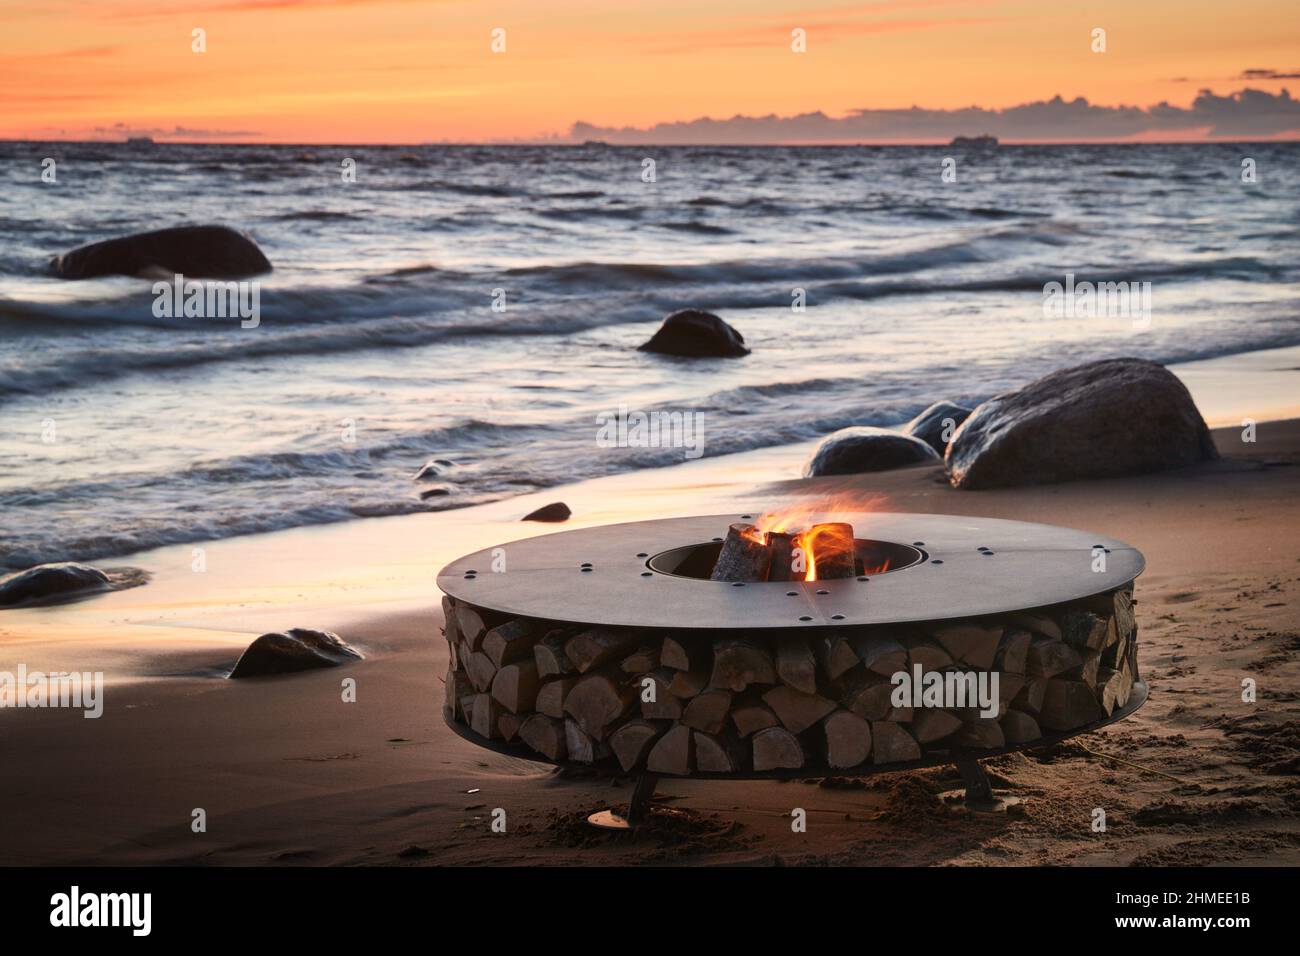 Il bel metallo attorno a un camino sorge sulla costa sabbiosa con un'onda marea al tramonto, pietre, sabbia, onde, il paesaggio, tranquillità, sole Foto Stock